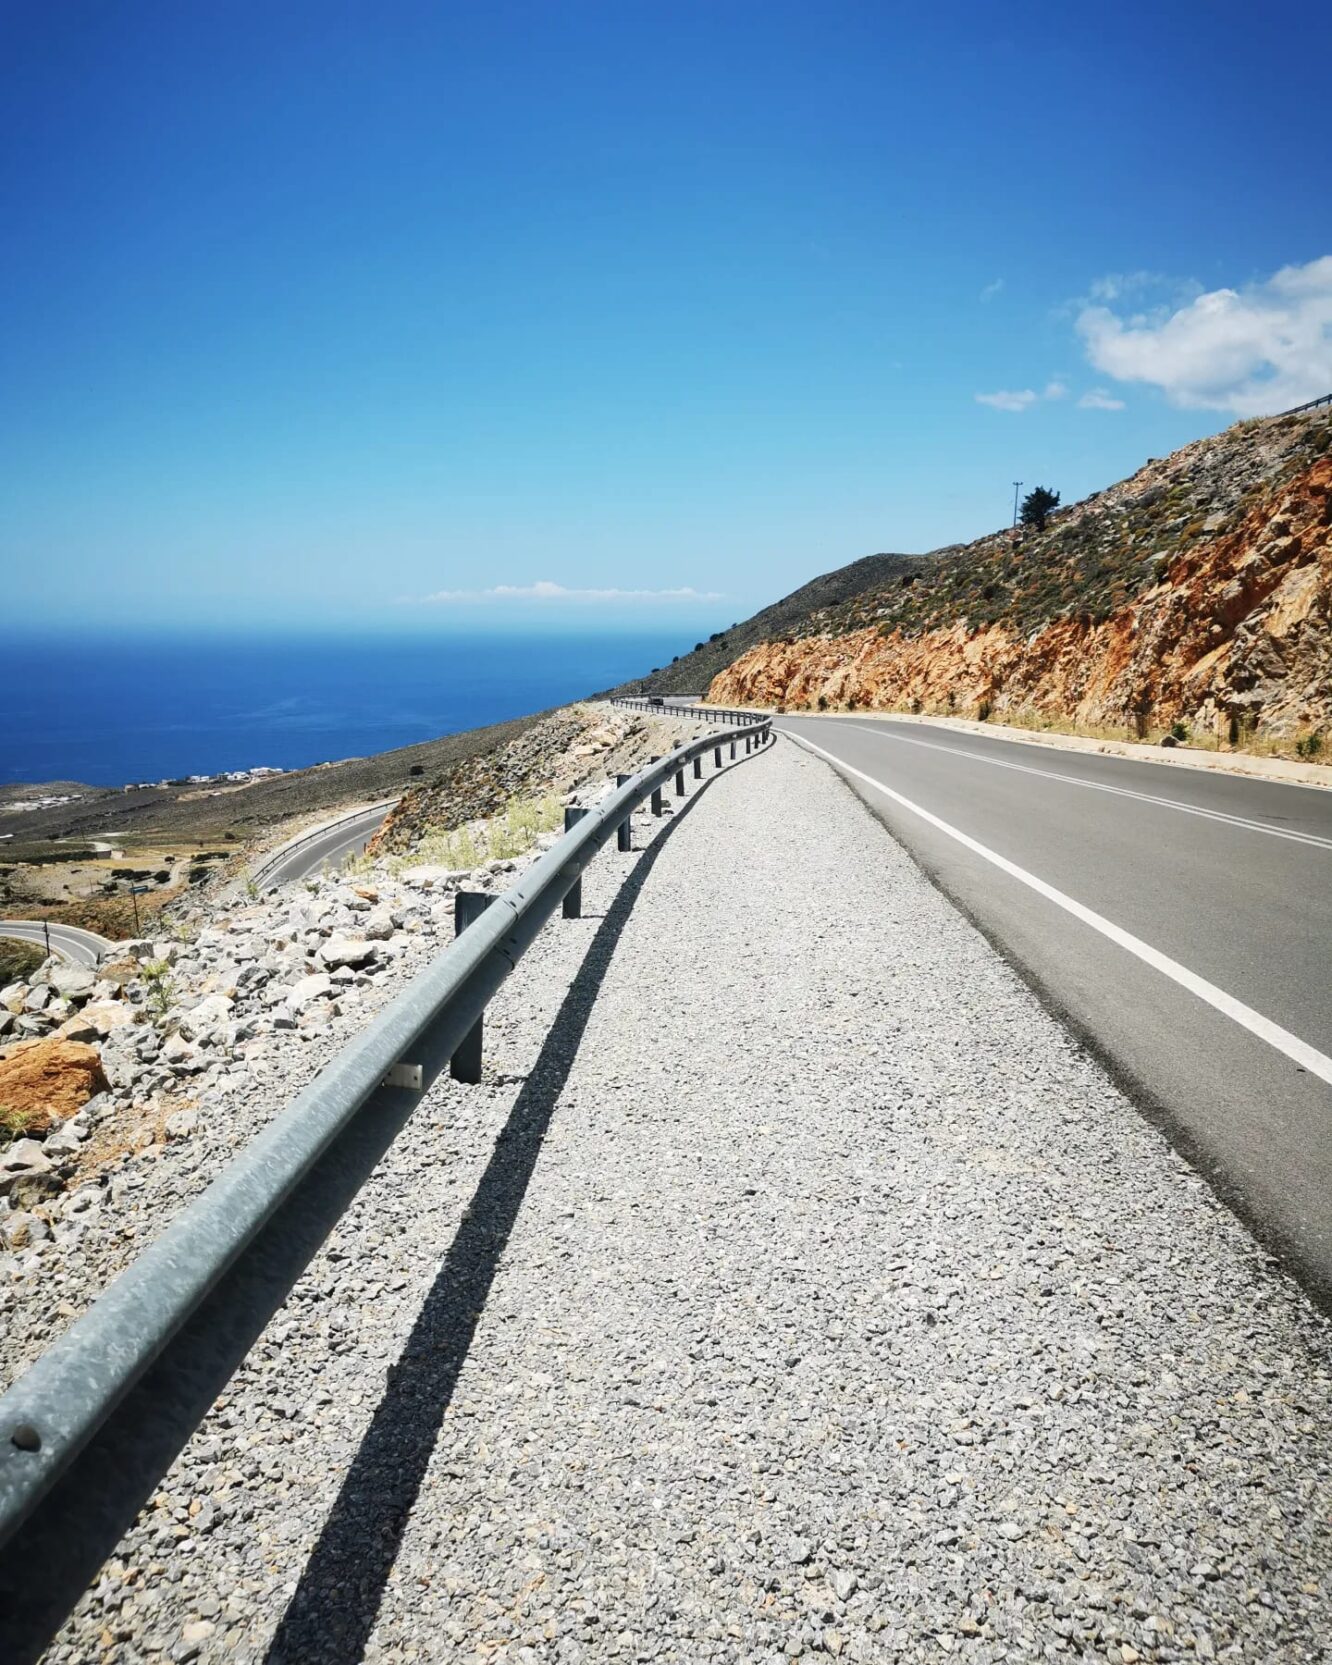  Fahren auf kretischen Straßen